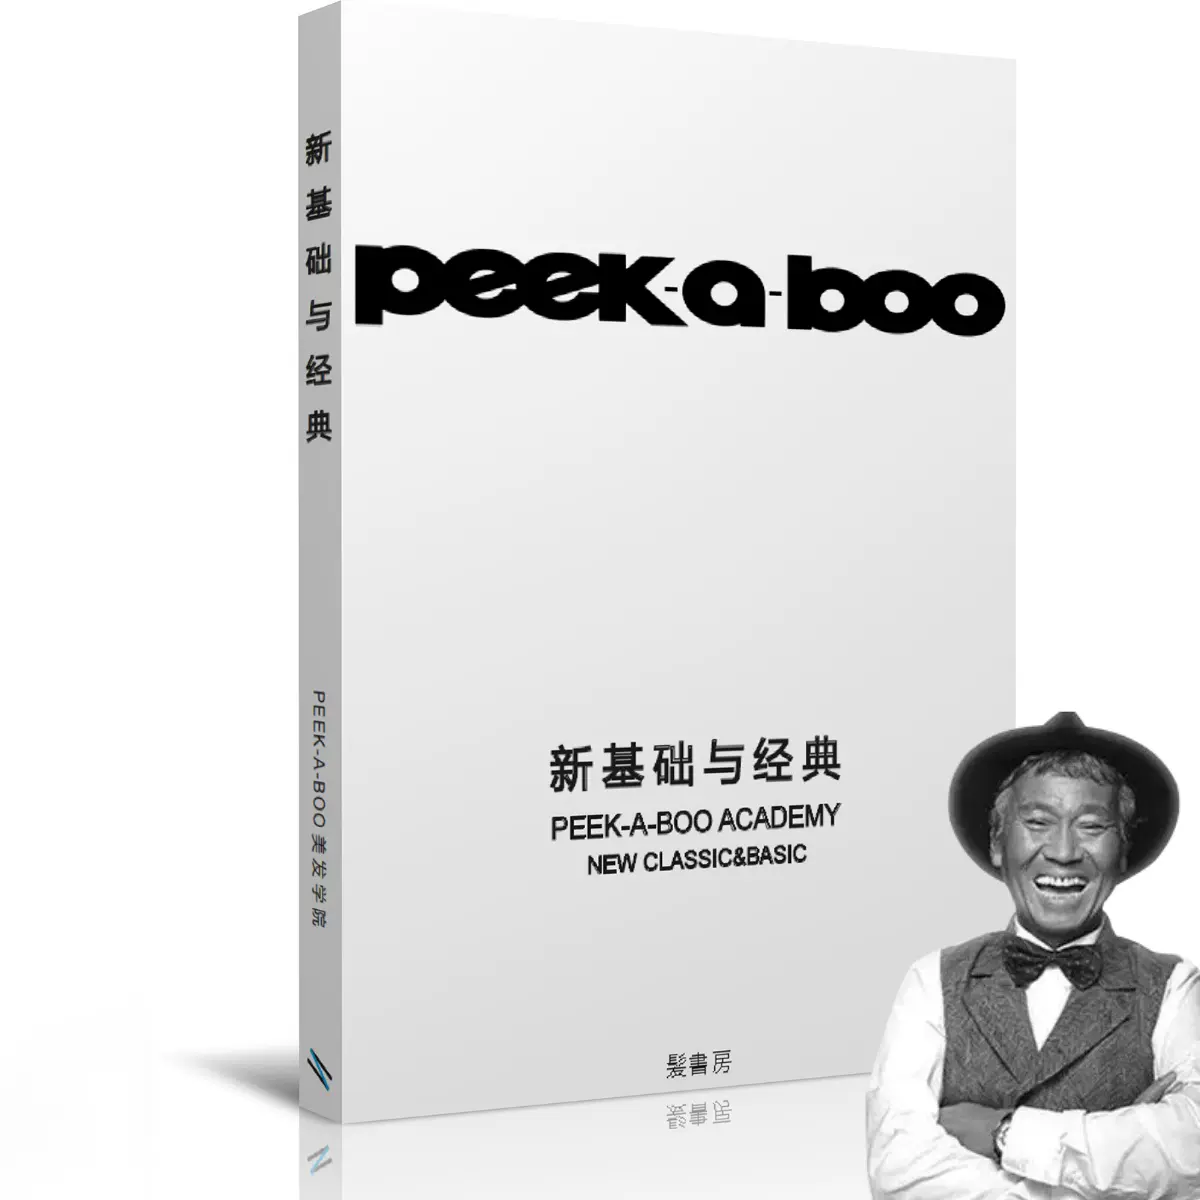 川岛文夫日本剪发教程peekaboo技术书新基础与经典发型师设计书籍-Taobao